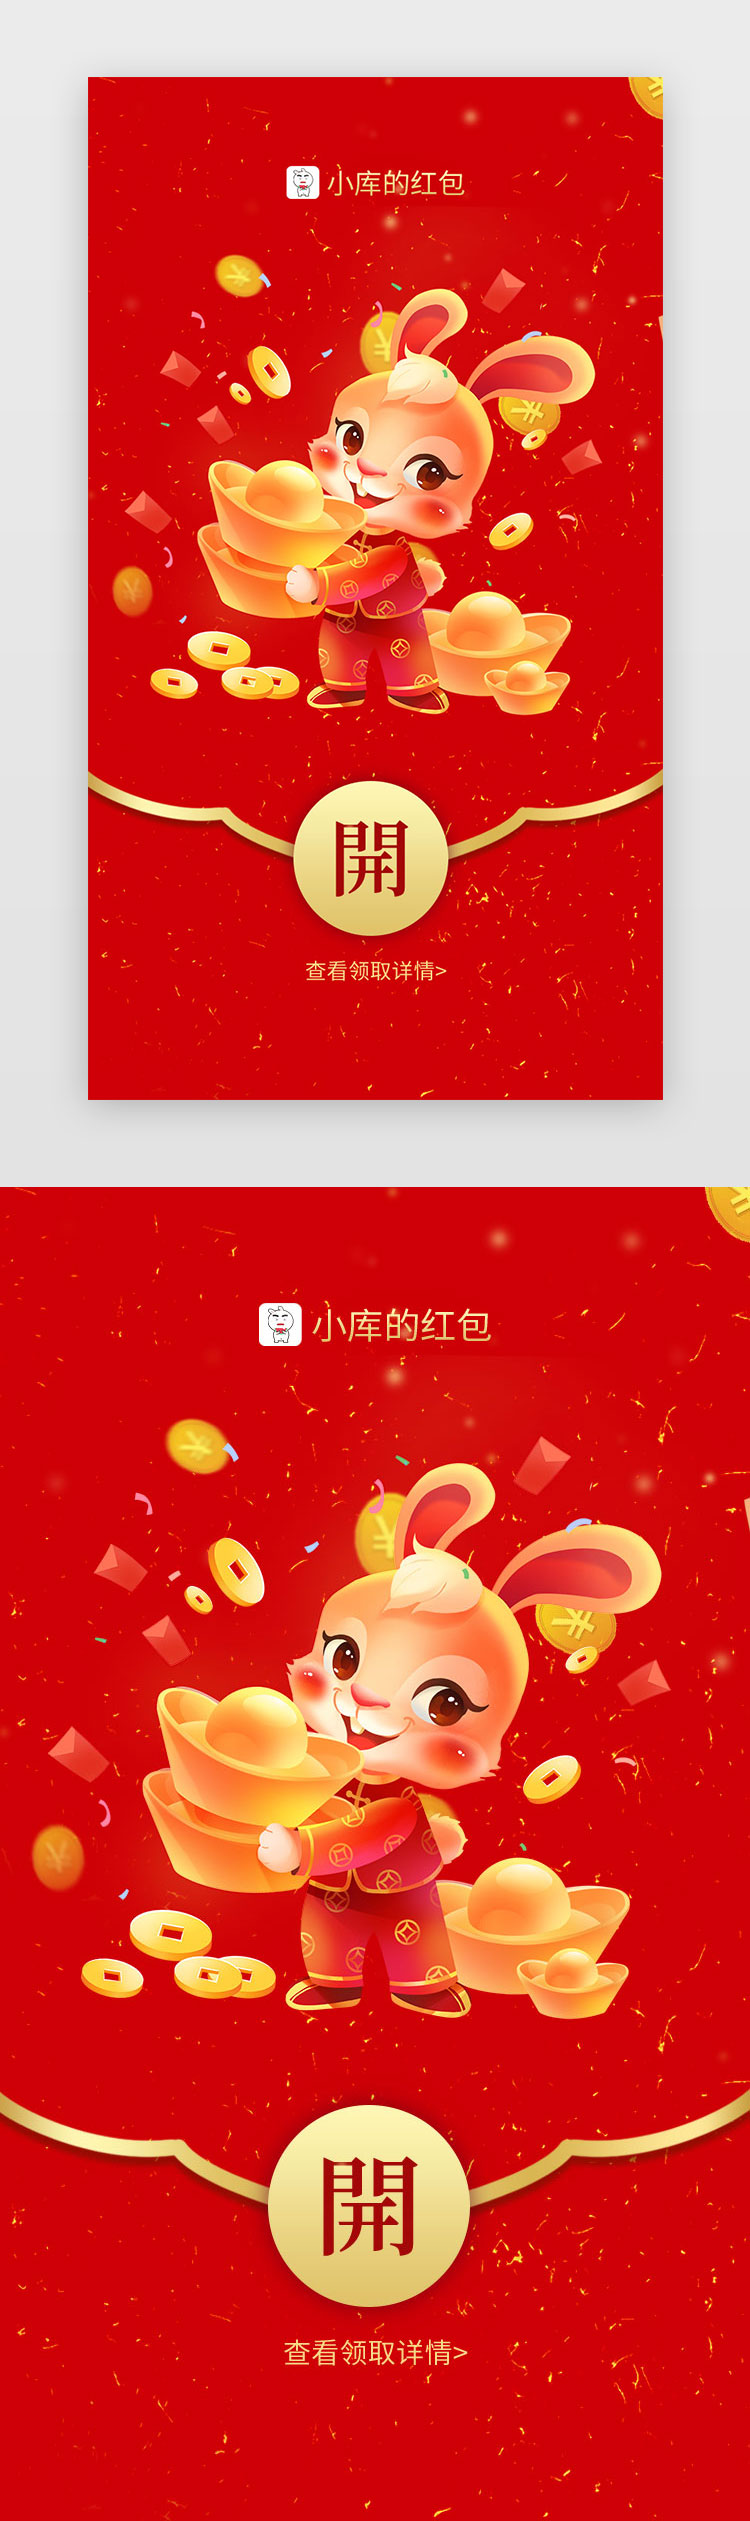 新年闪屏中国风红色招财进宝图片